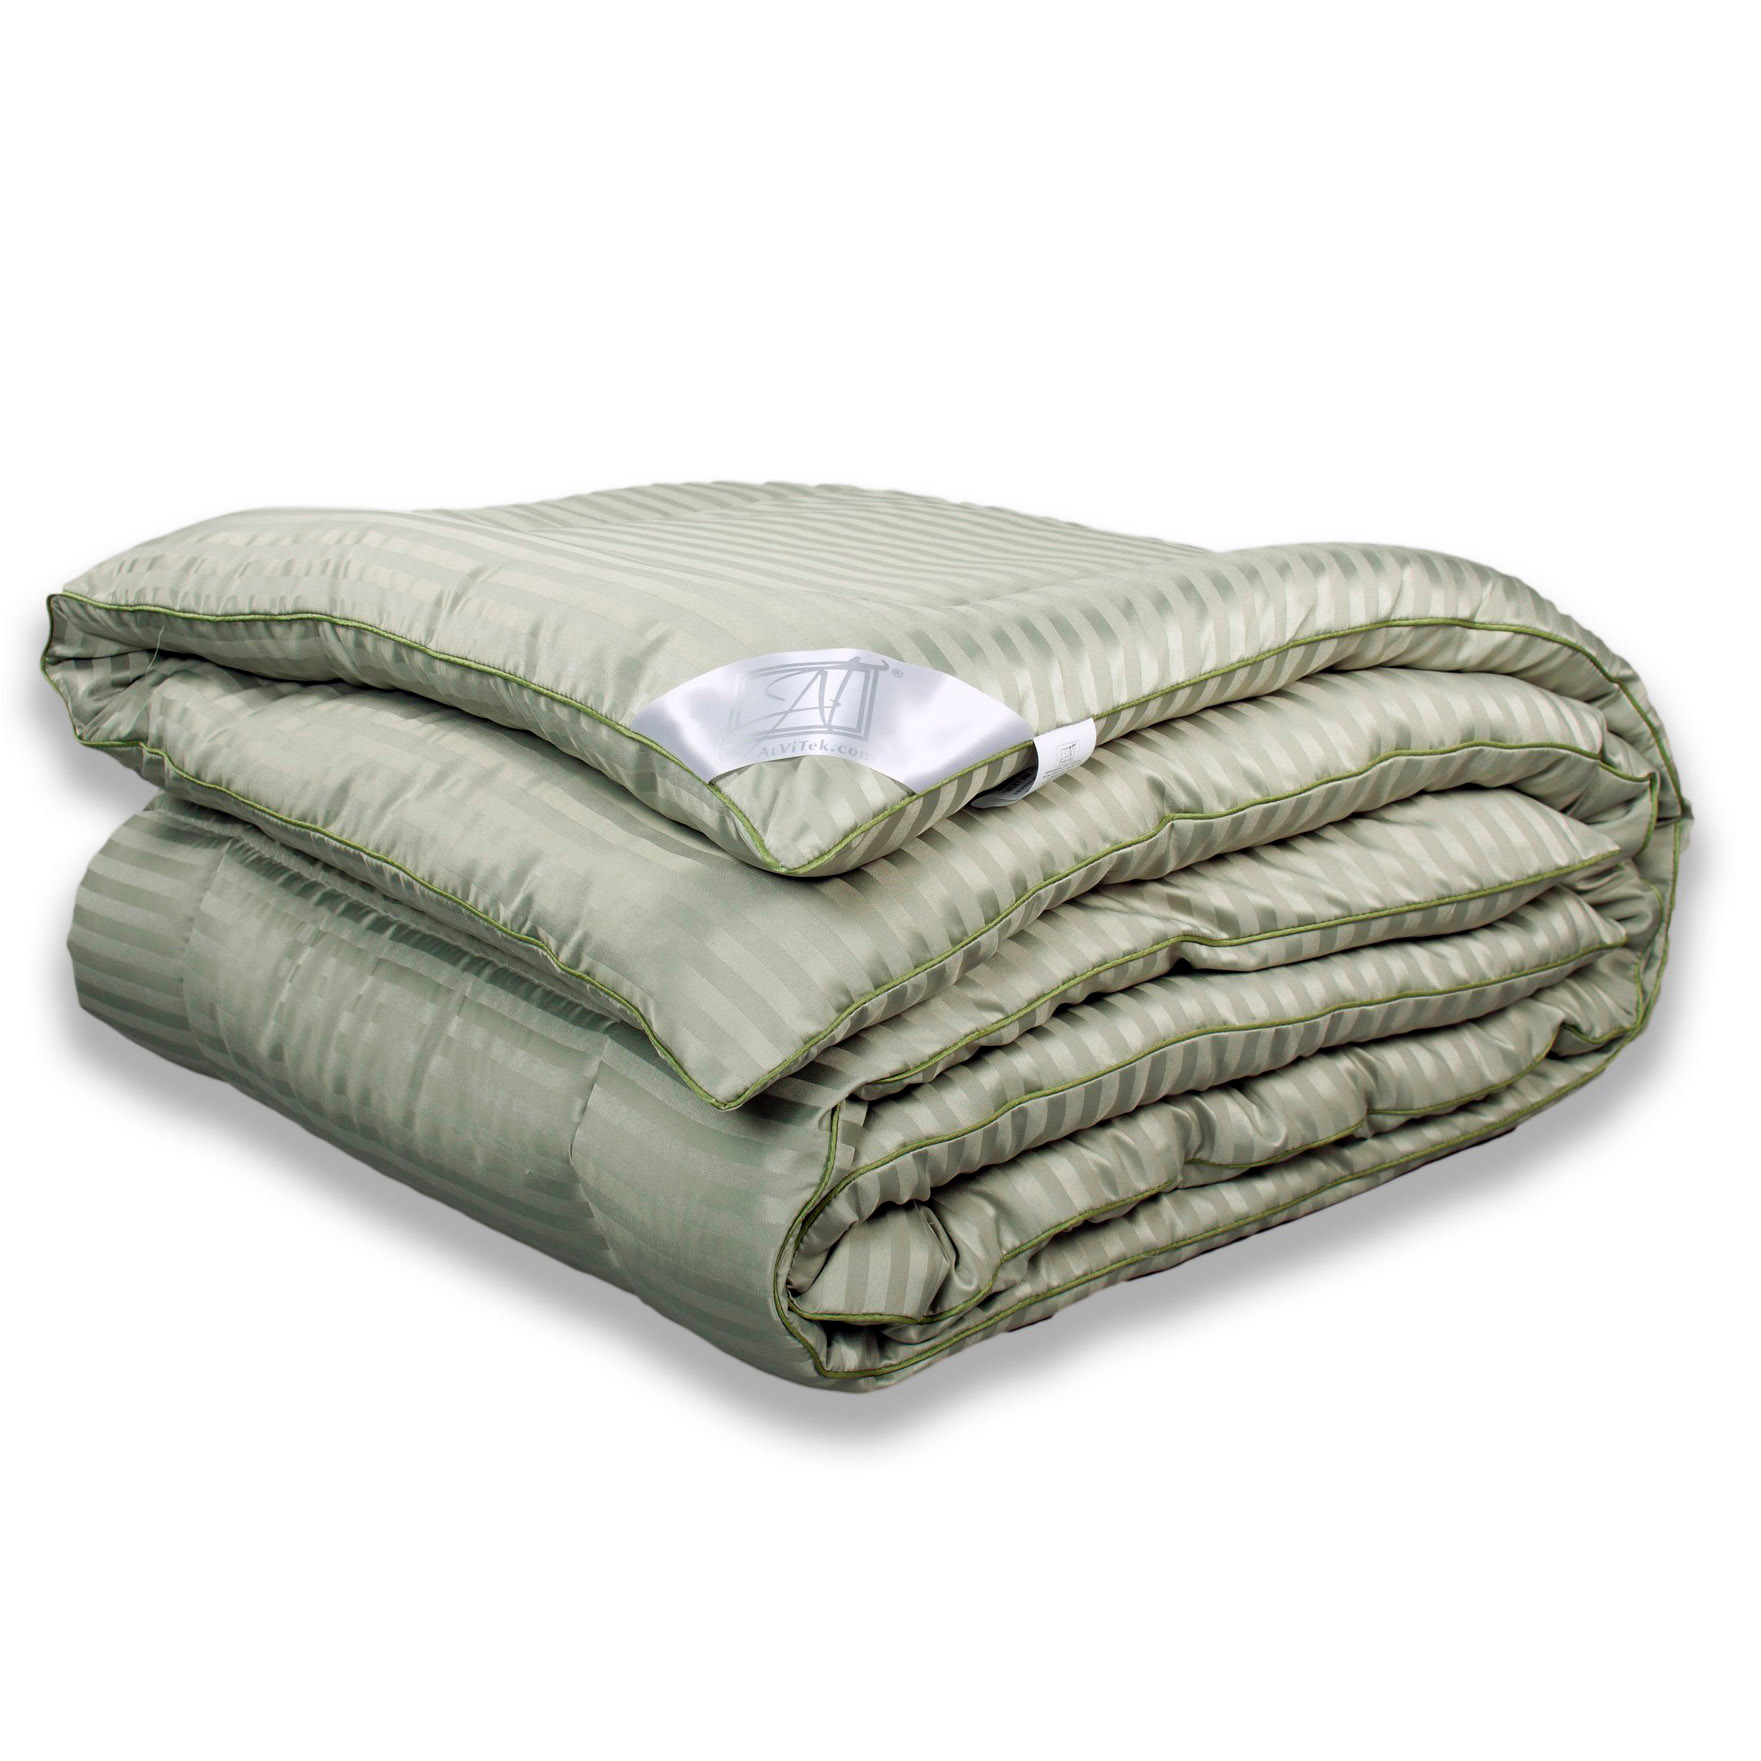 Одеяло Silky Dream (200х220 см), размер 200х220 см avt976396 Одеяло Silky Dream (200х220 см) - фото 1